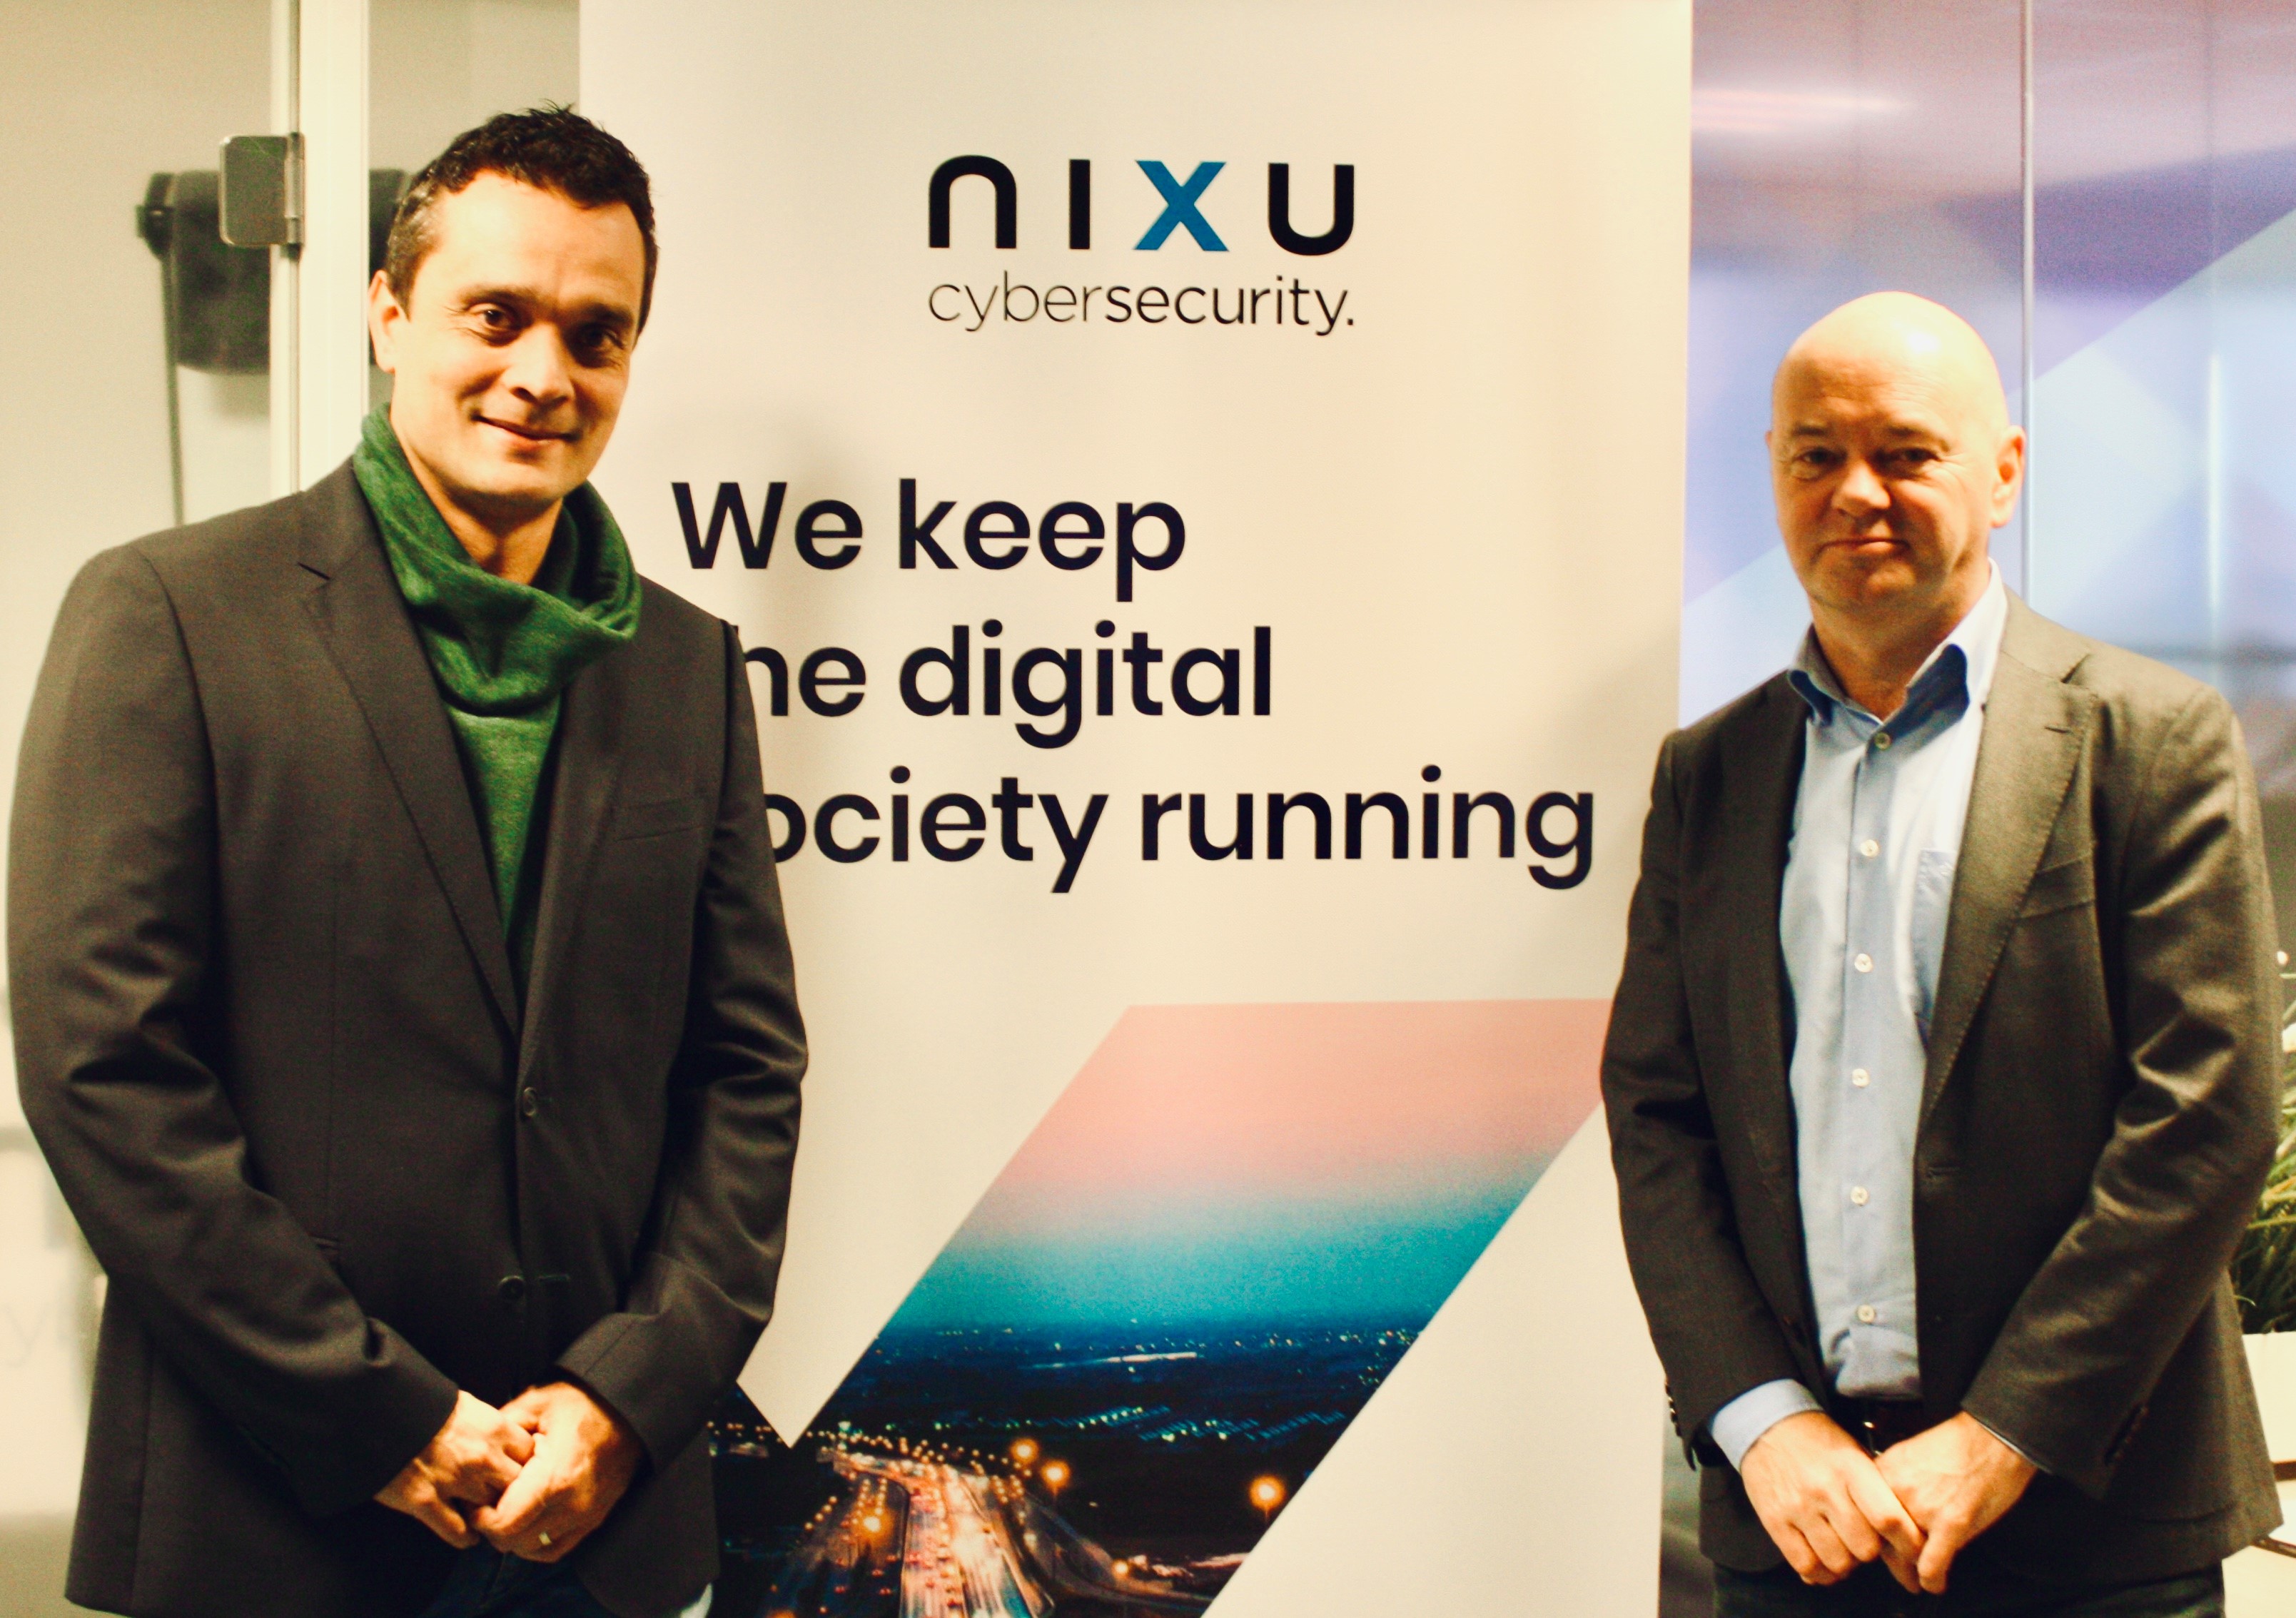 Nixu breidt managementteam Benelux verder uit